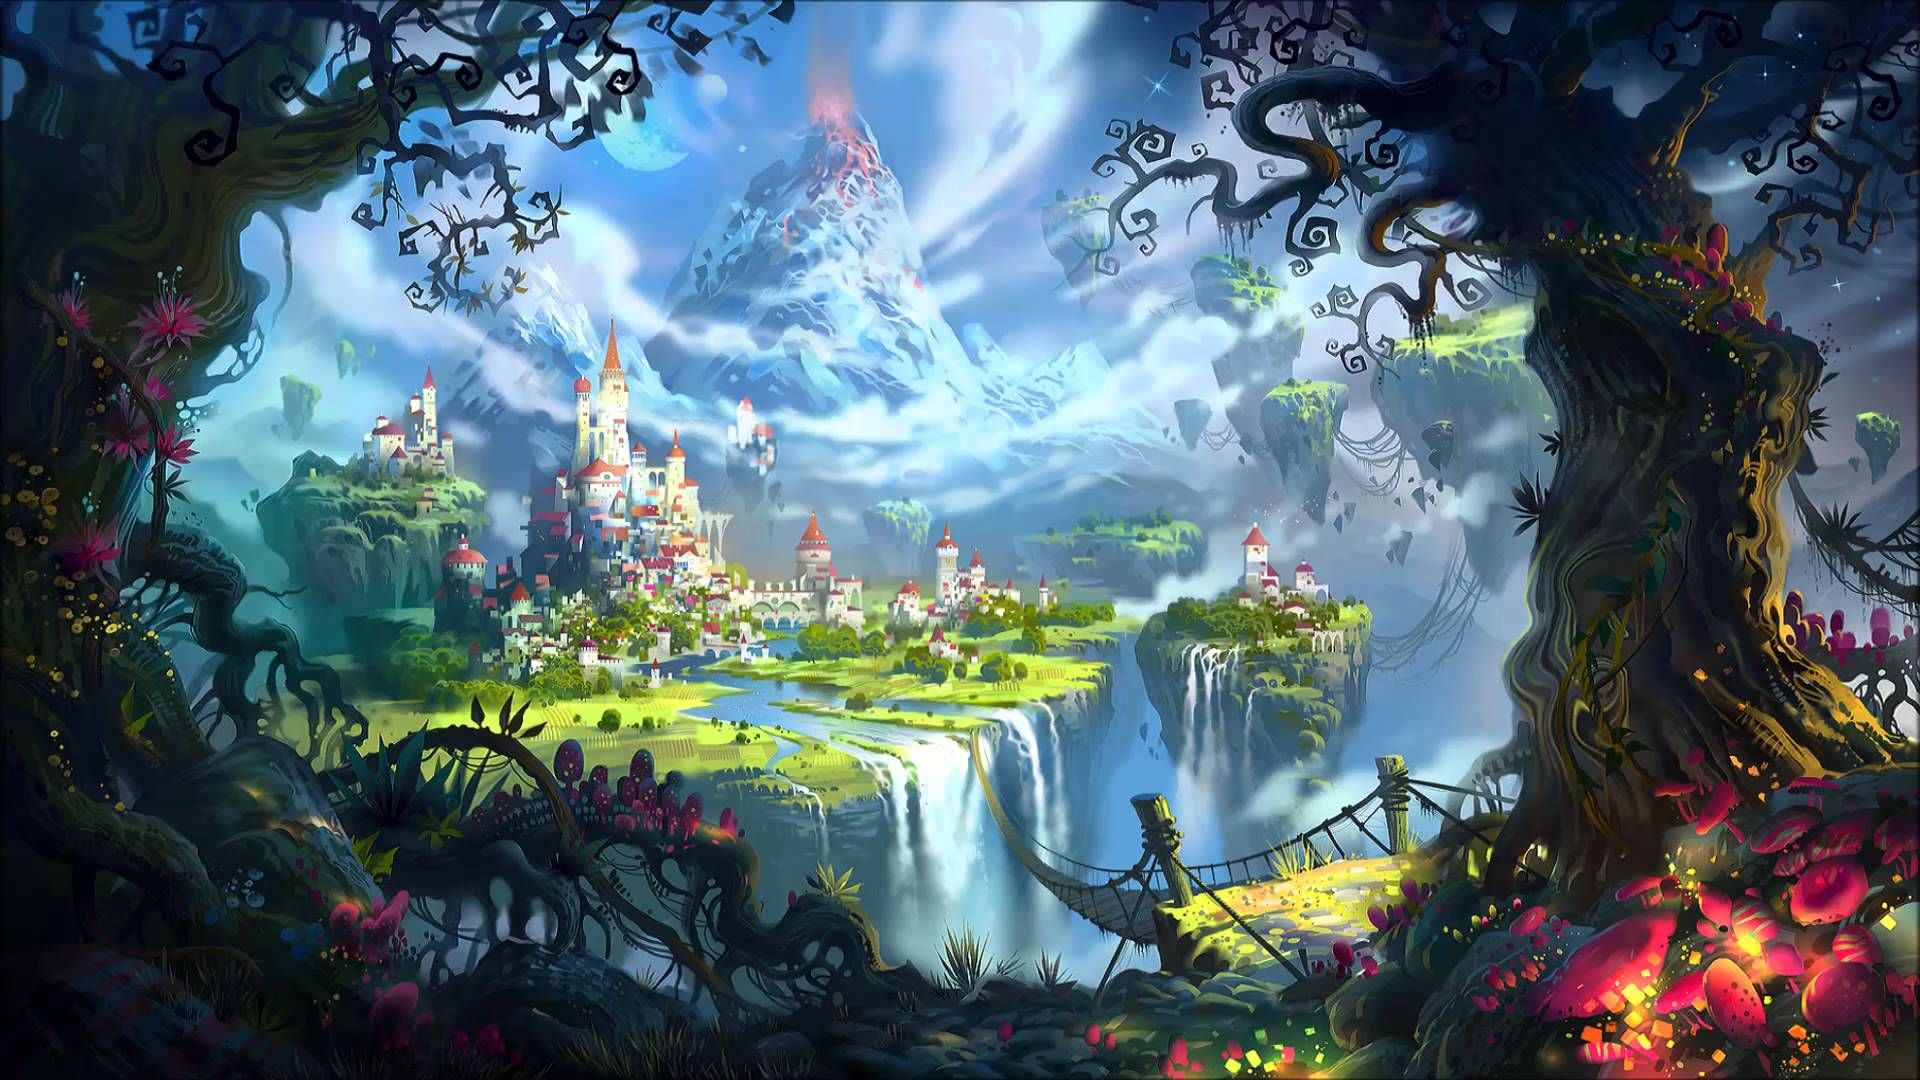 تصویر سازی منظره تخیلی با نمایش جنگل ، قلعه ، کوه و ابرها